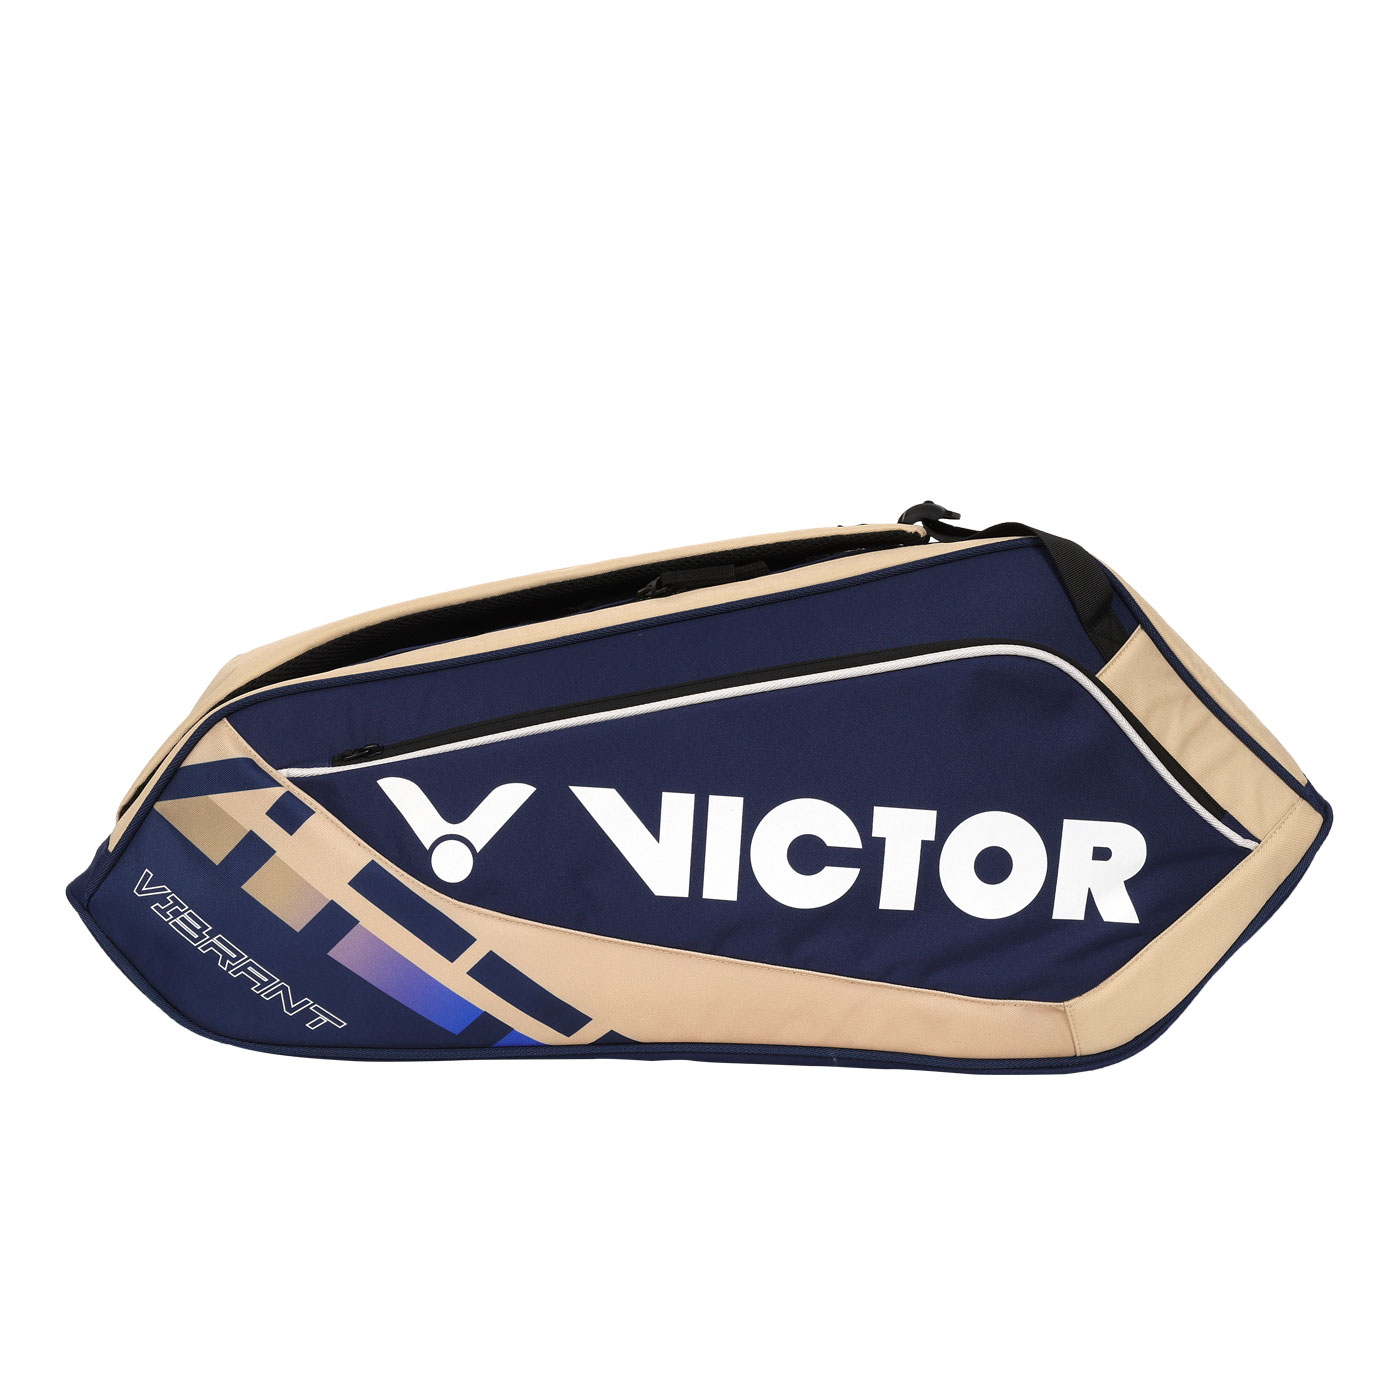 VICTOR 6支裝羽拍包  BR5215BV - 深藍奶茶白